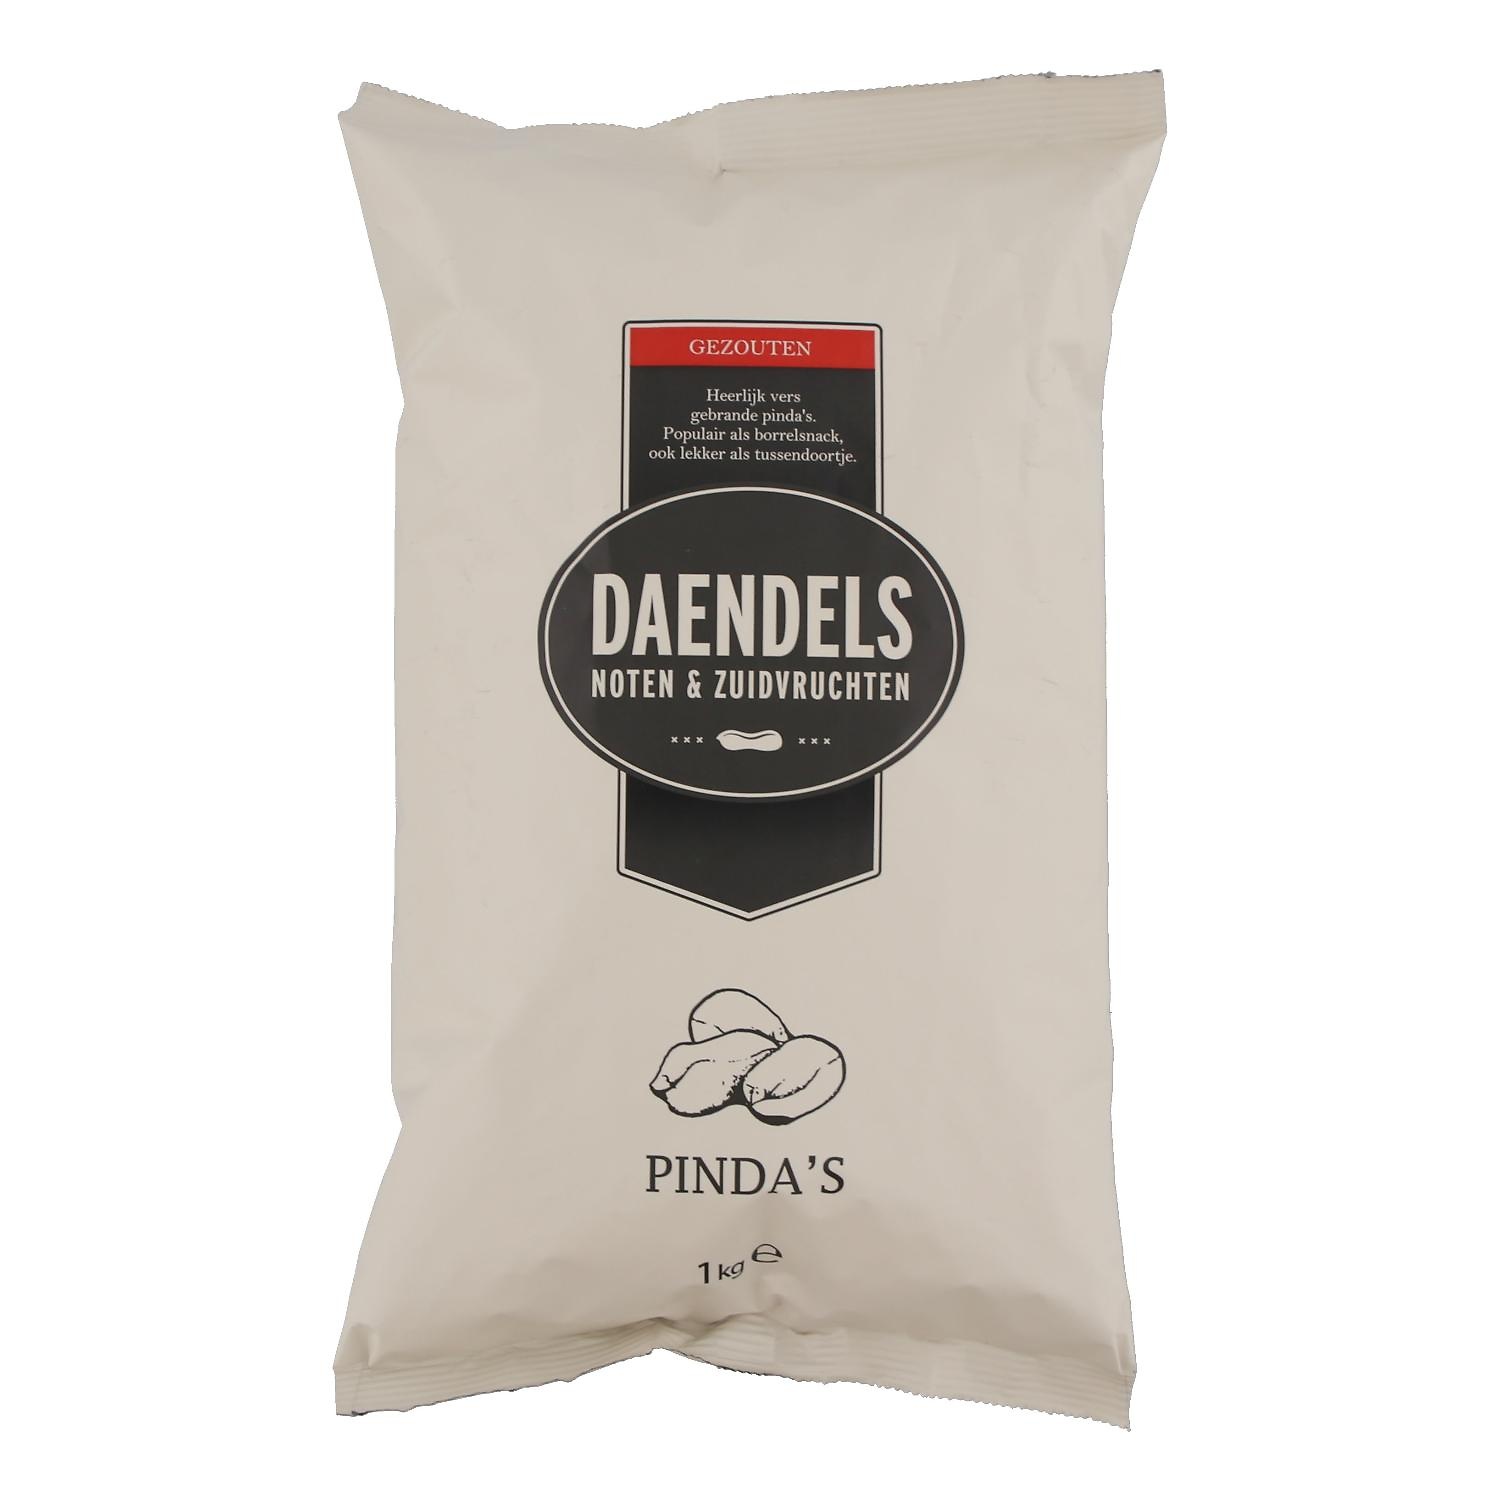 Pinda's gezouten Daendels 1000 gram